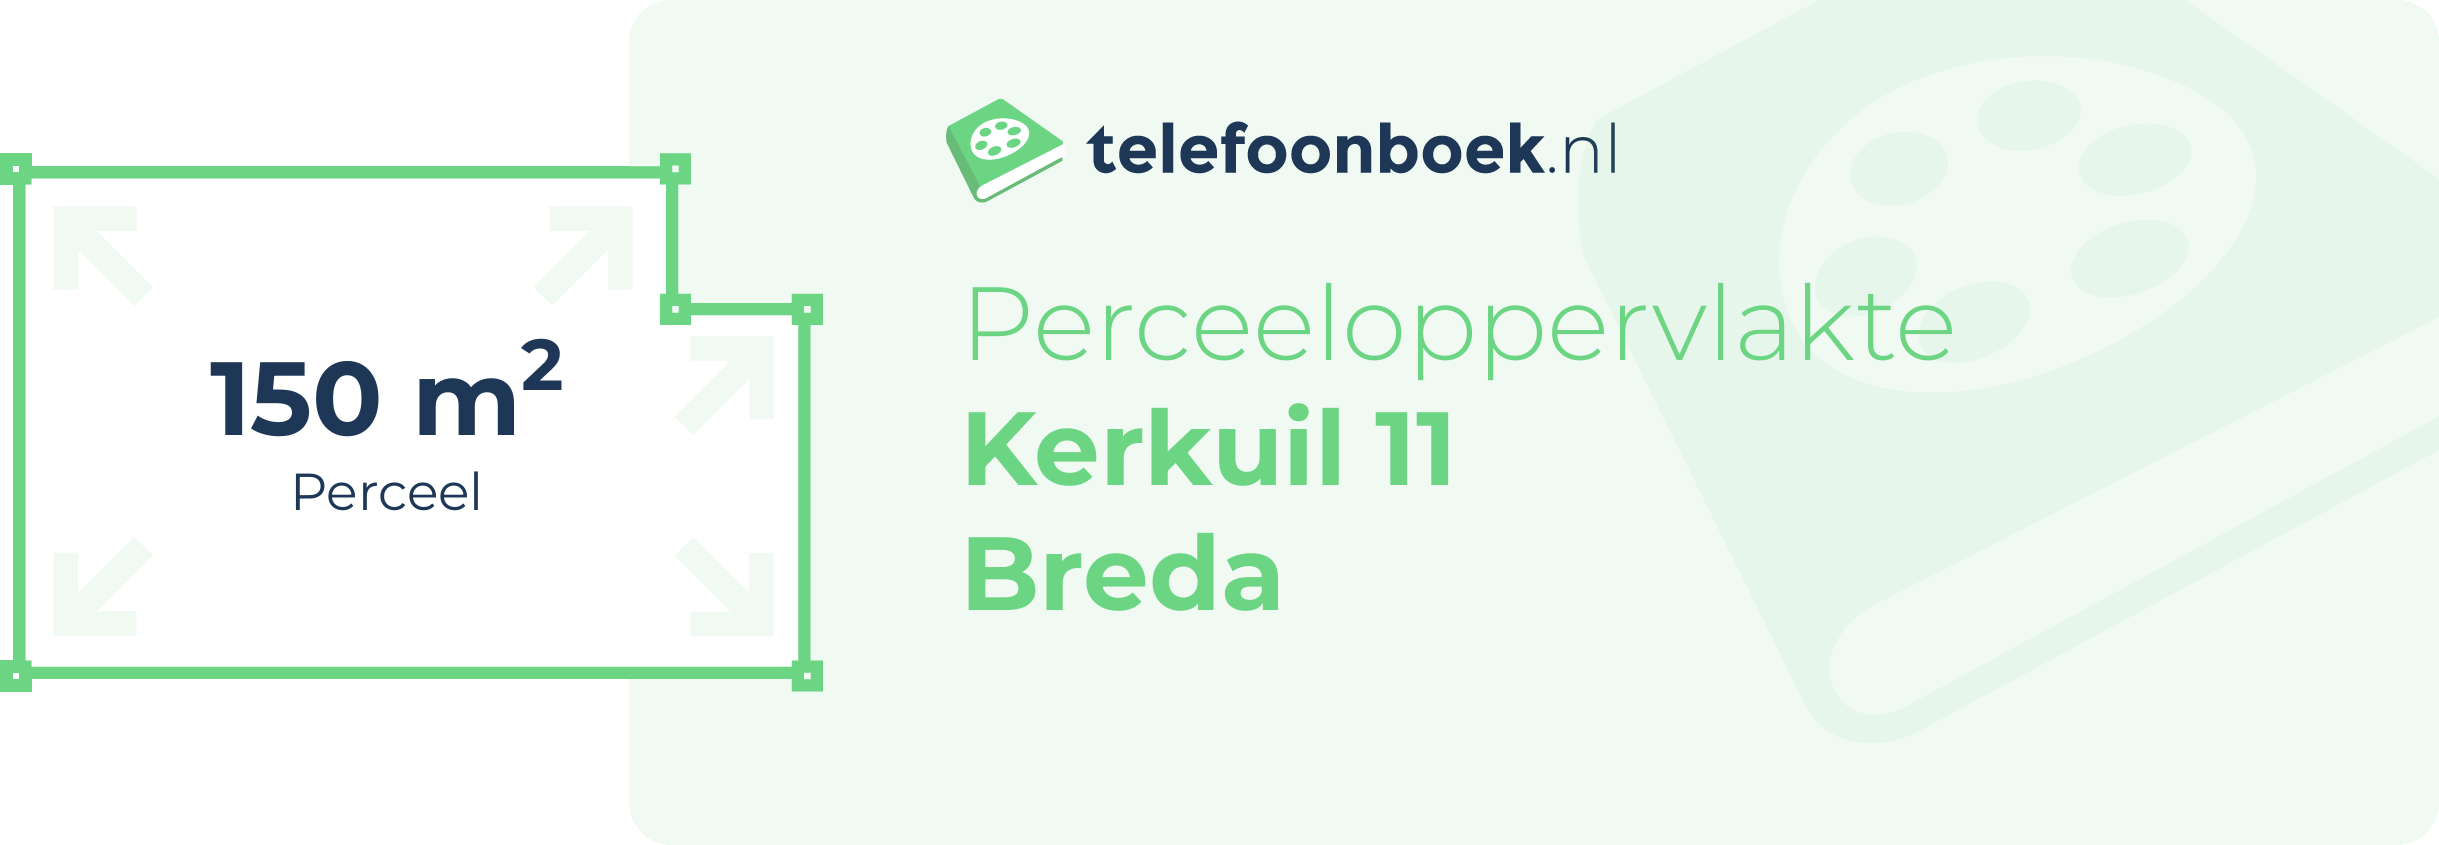 Perceeloppervlakte Kerkuil 11 Breda